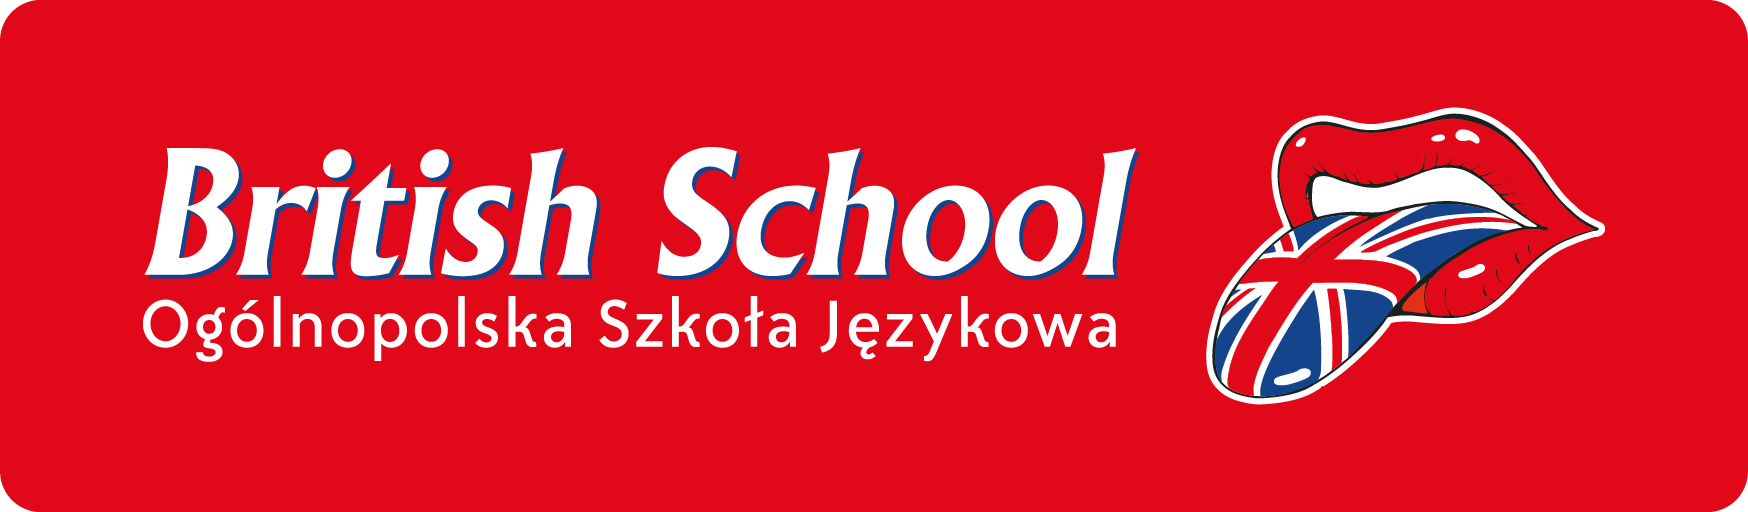 BRITISH SCHOOL Ogólnopolska Szkoła Językowa